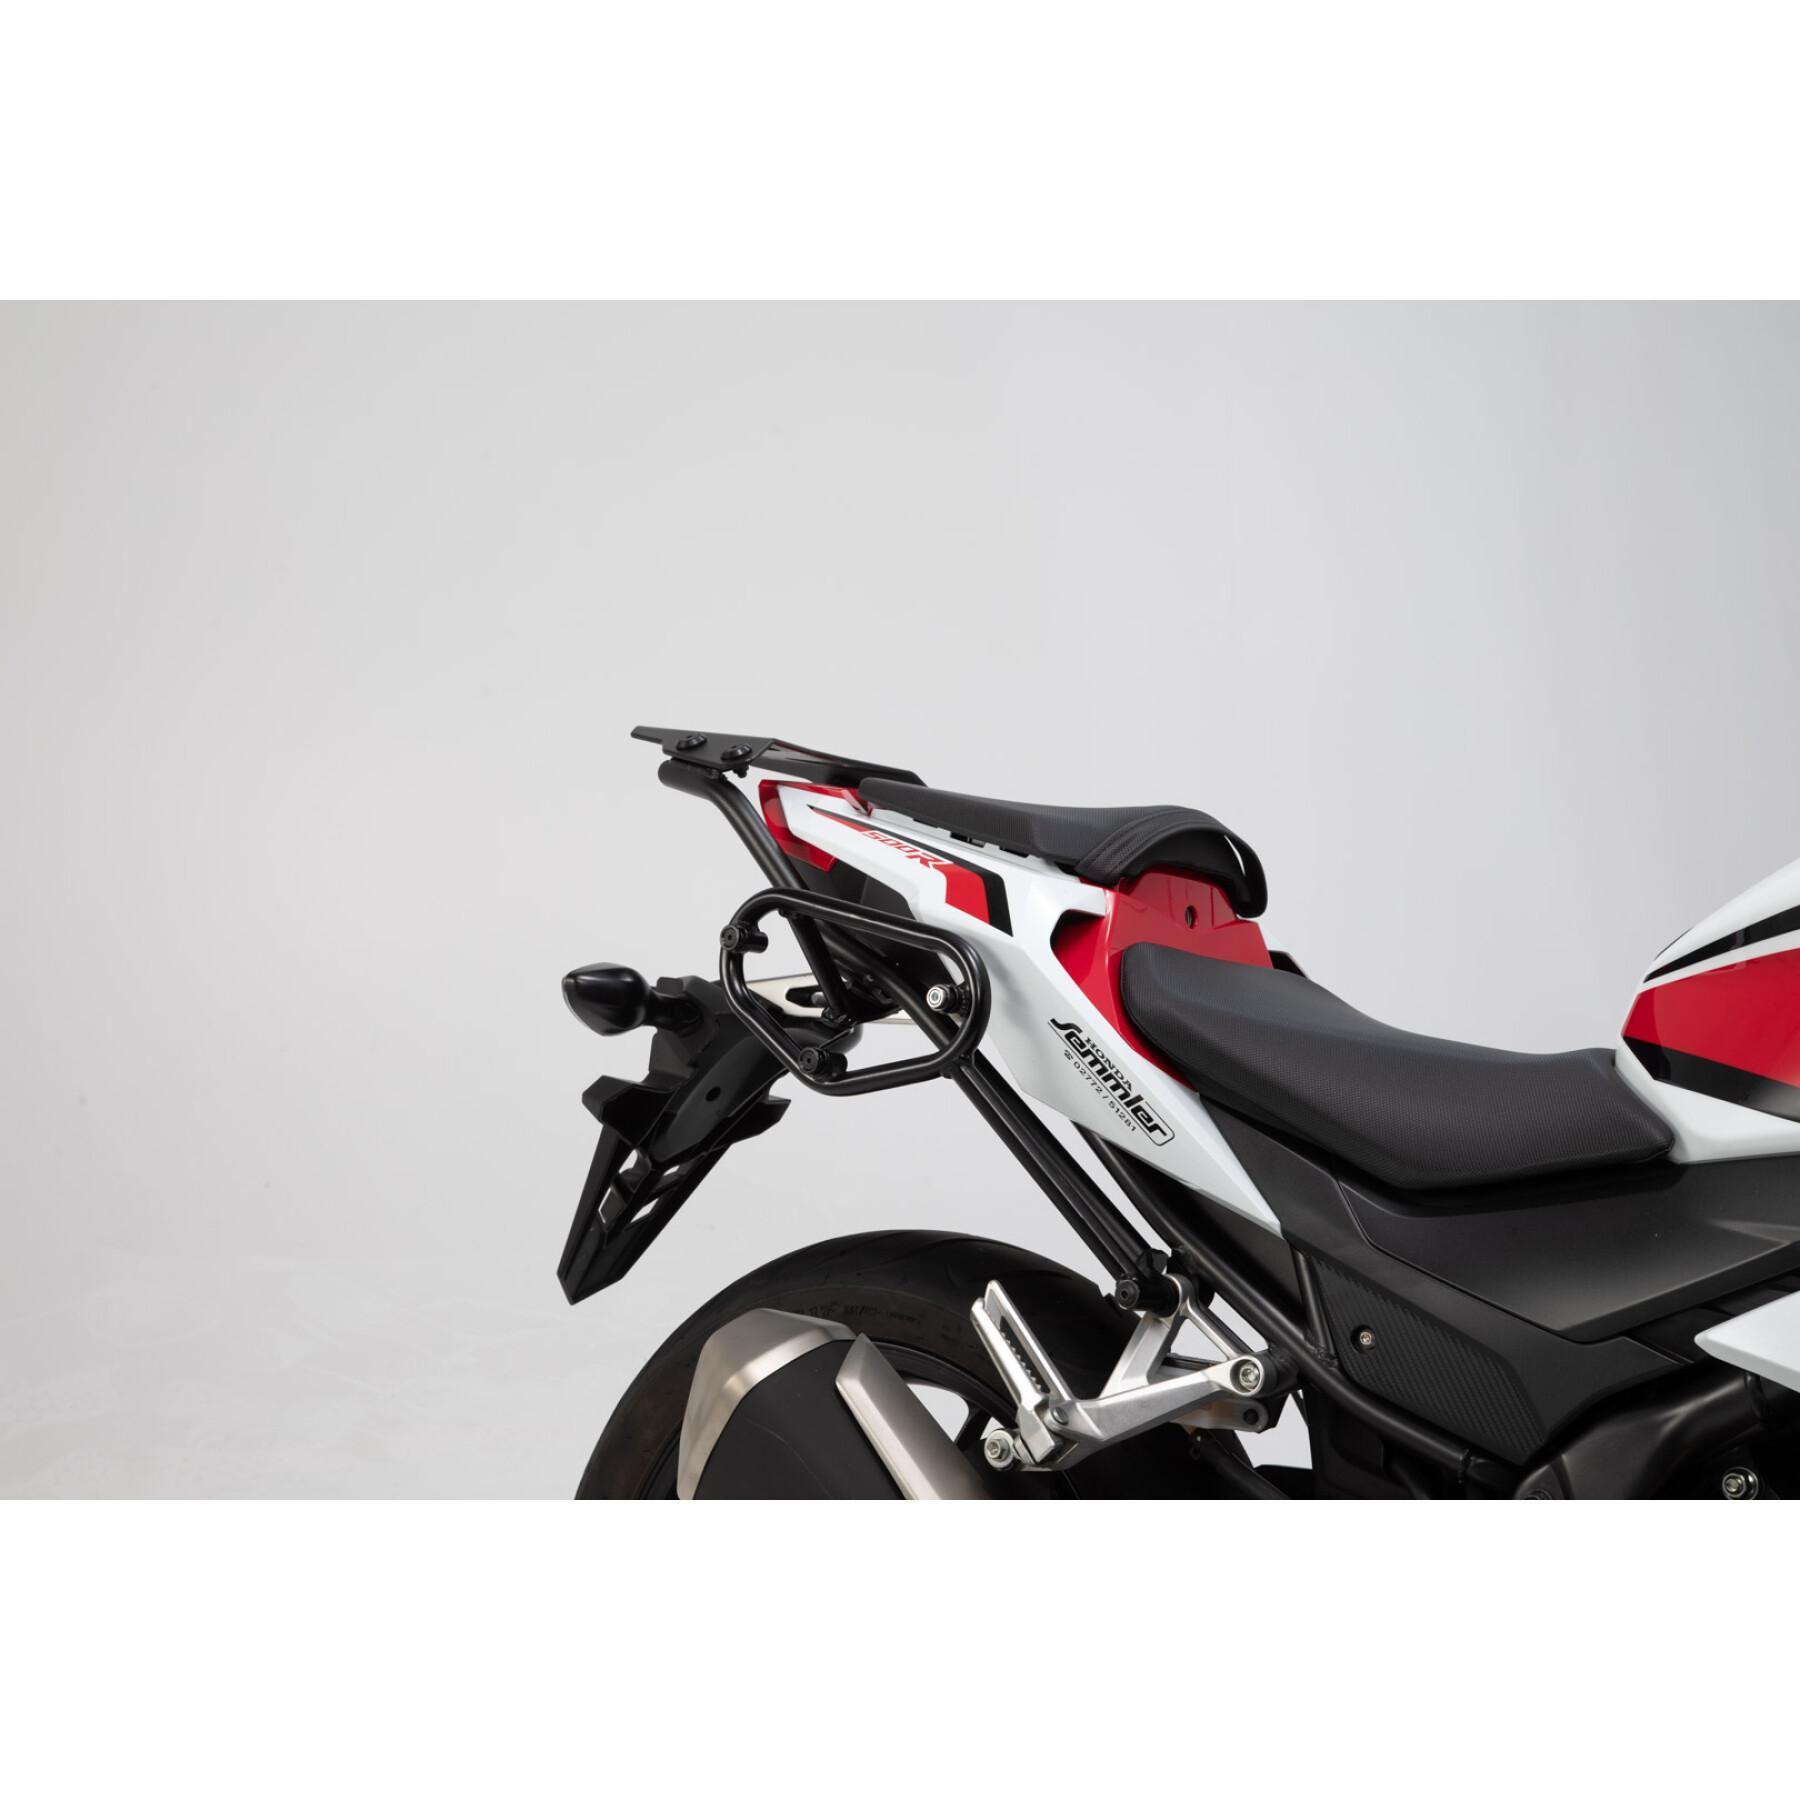 Motorrad-Seitenkoffer-Set SW-Motech URBAN ABS 2x 16,5 l.Honda CB500F (16-18)/ CBR500R (16-18).